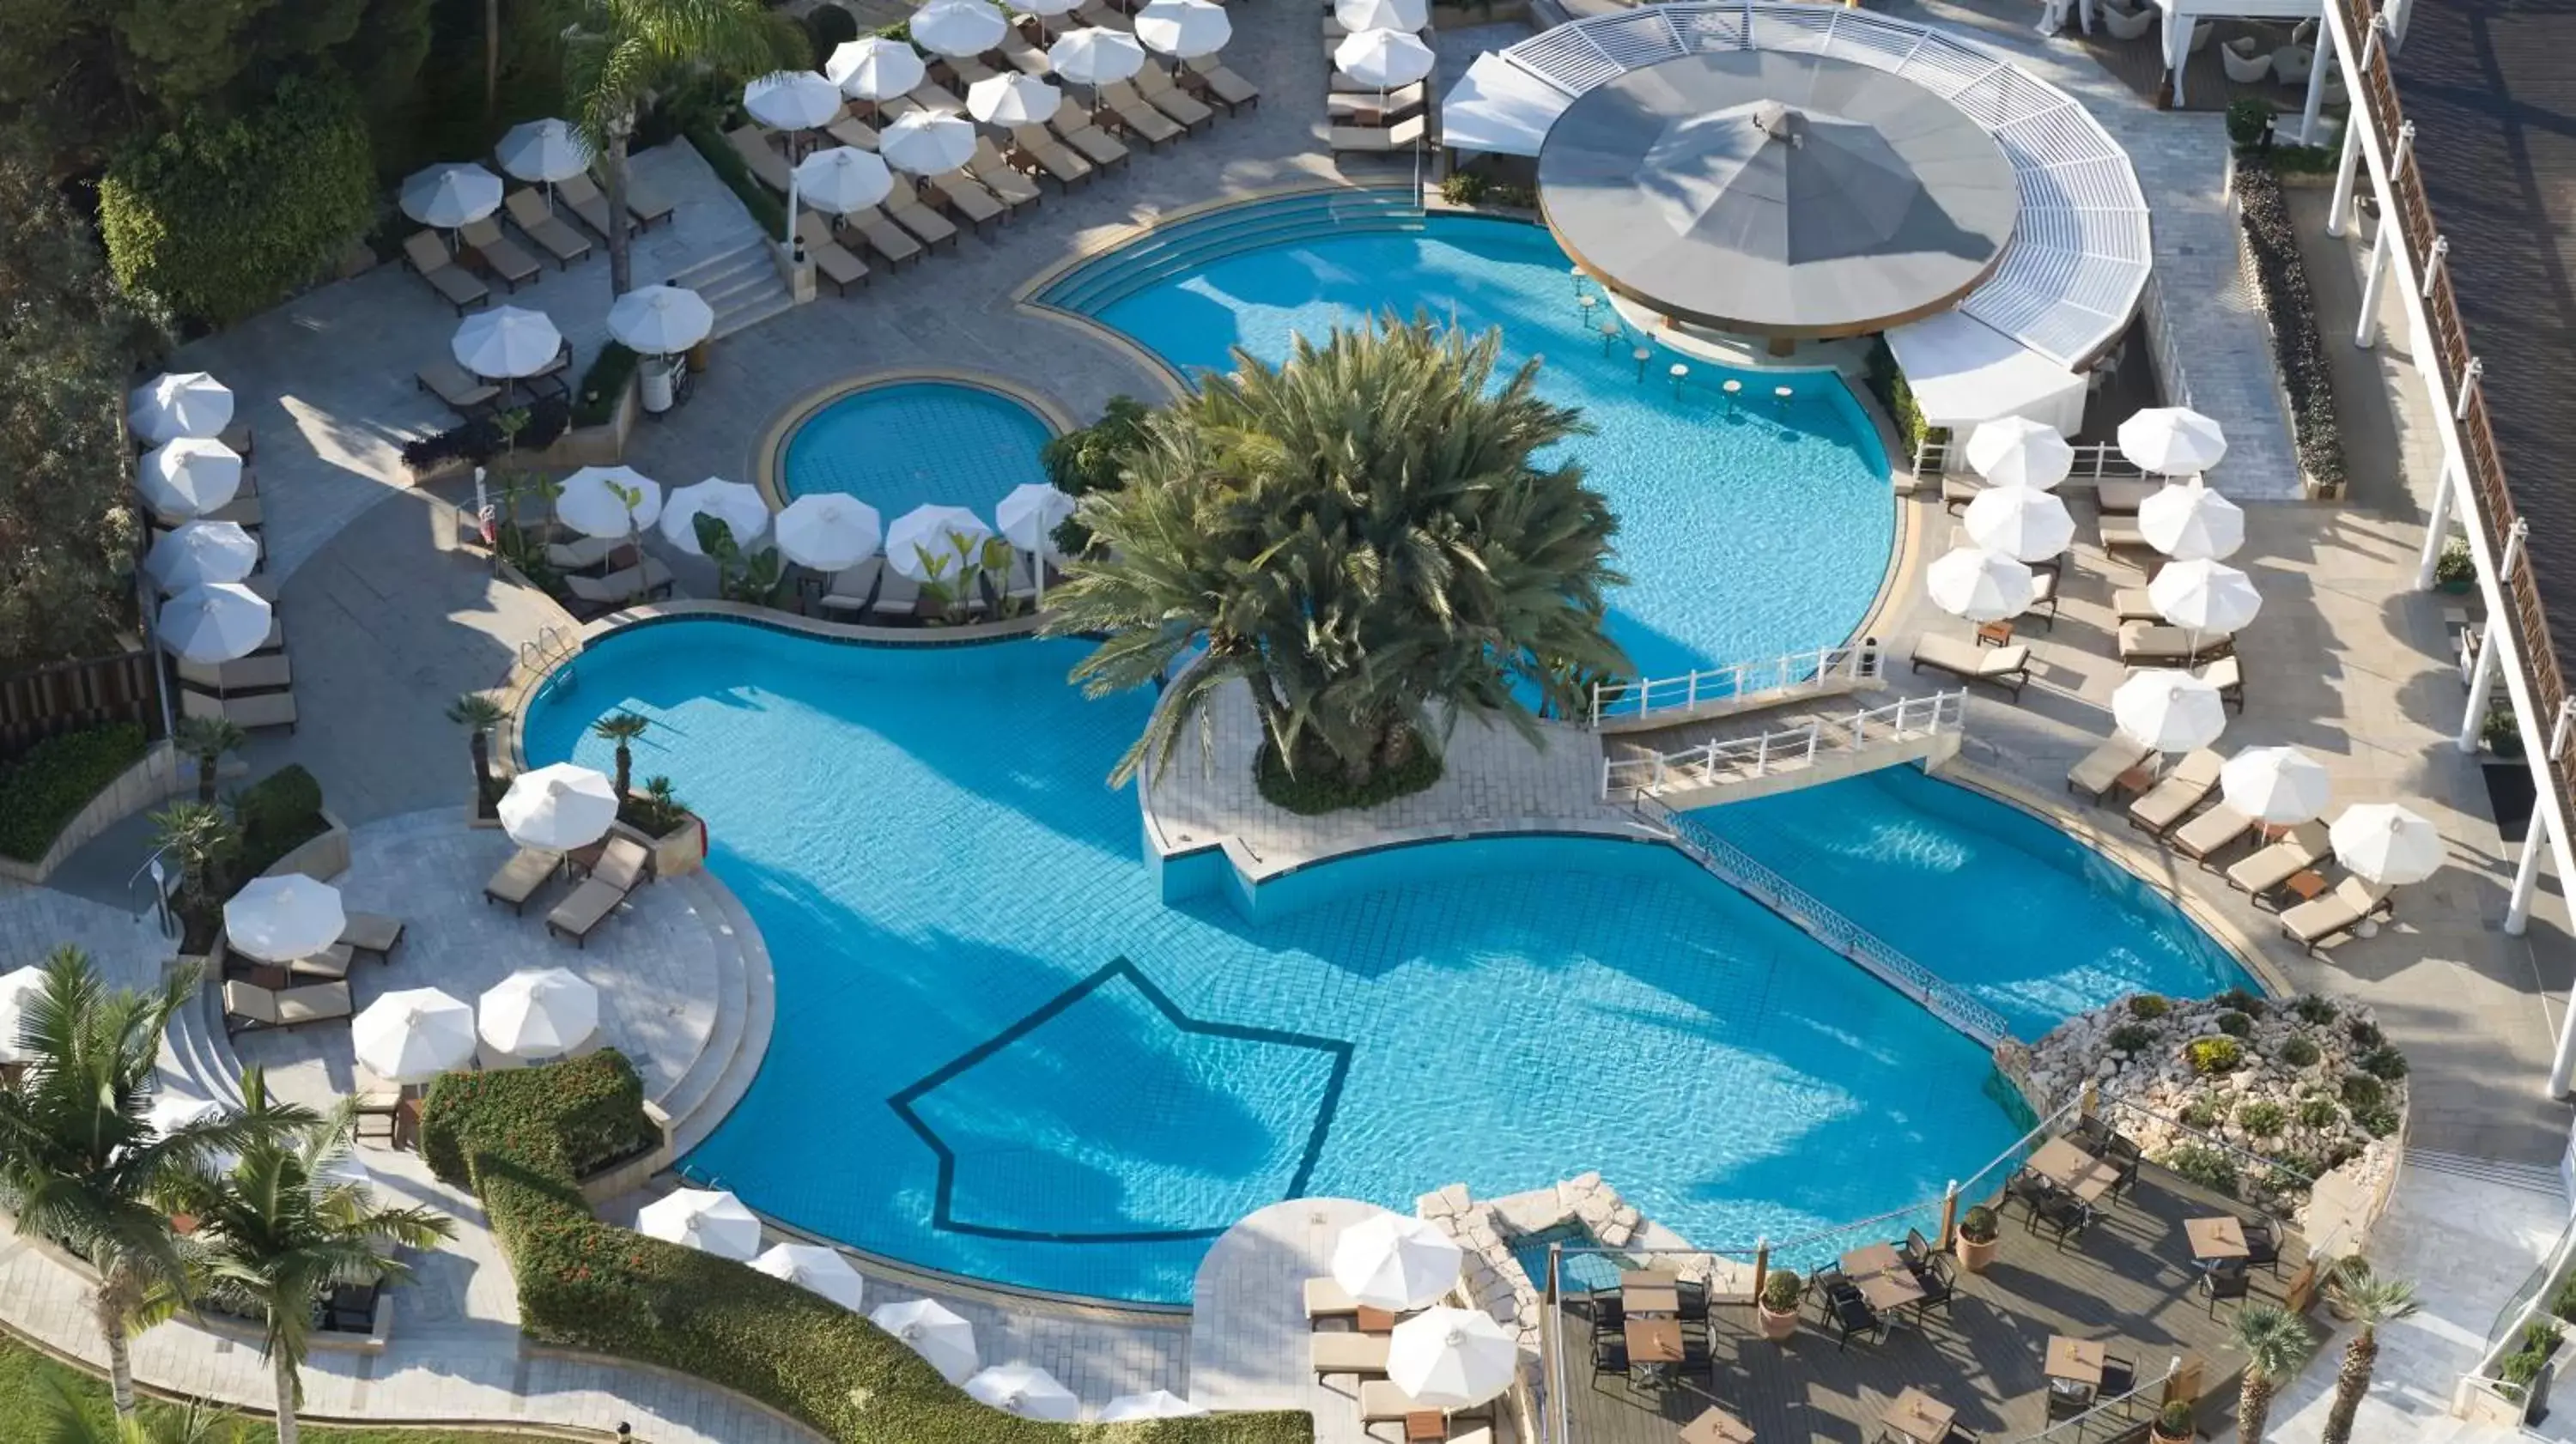 Bird's eye view, Pool View in Mediterranean Beach Hotel